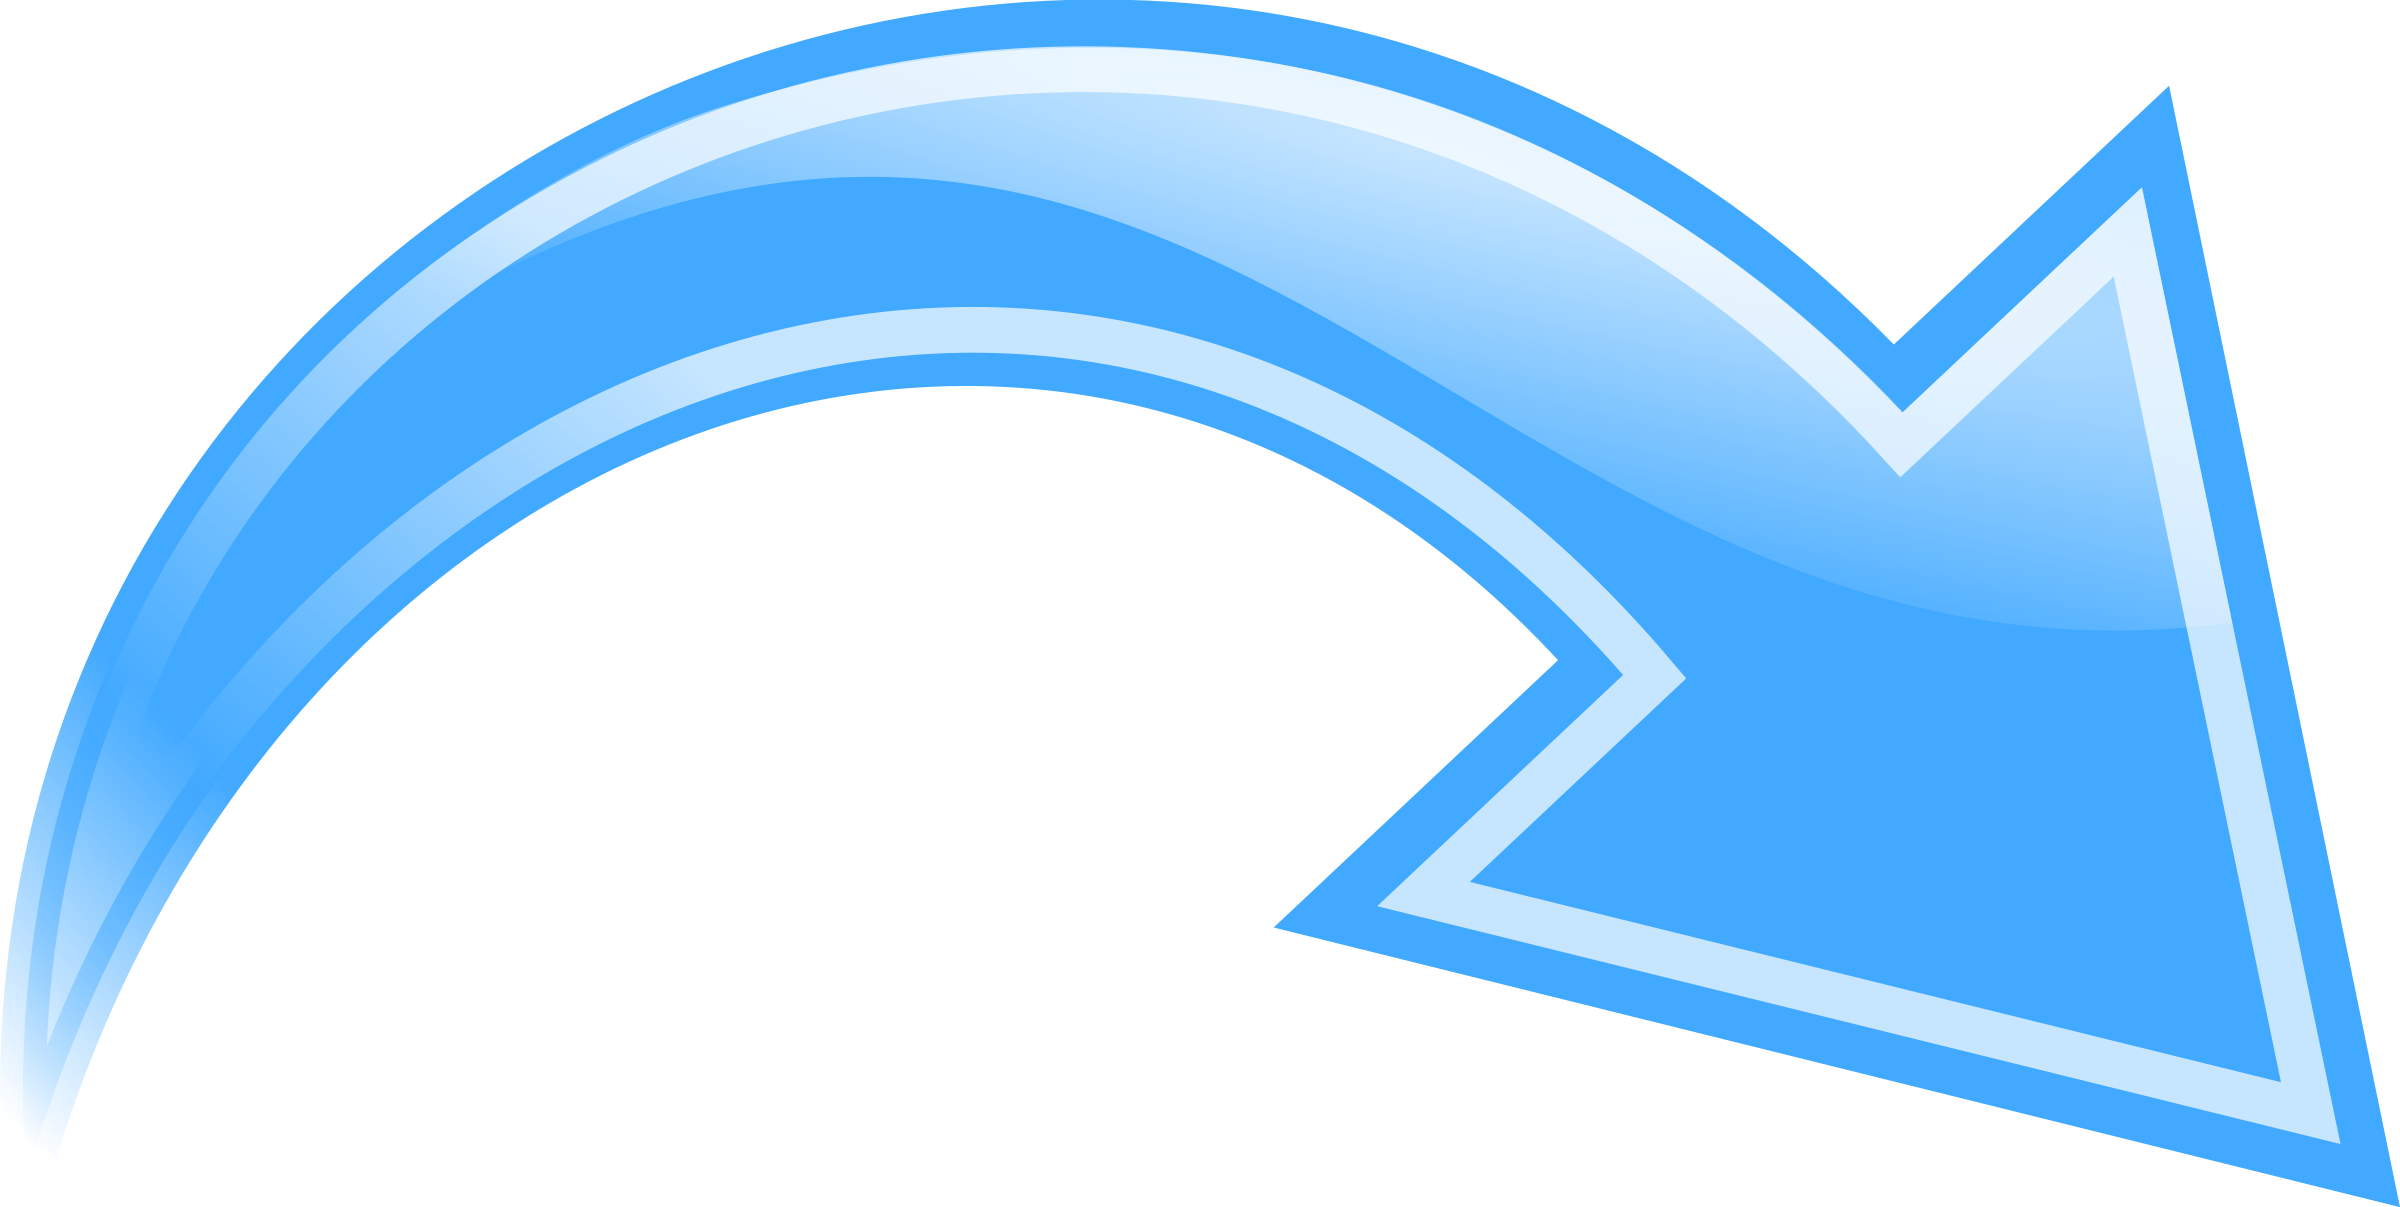 Curved Arrow, Blue - Curved Arrow Clipart